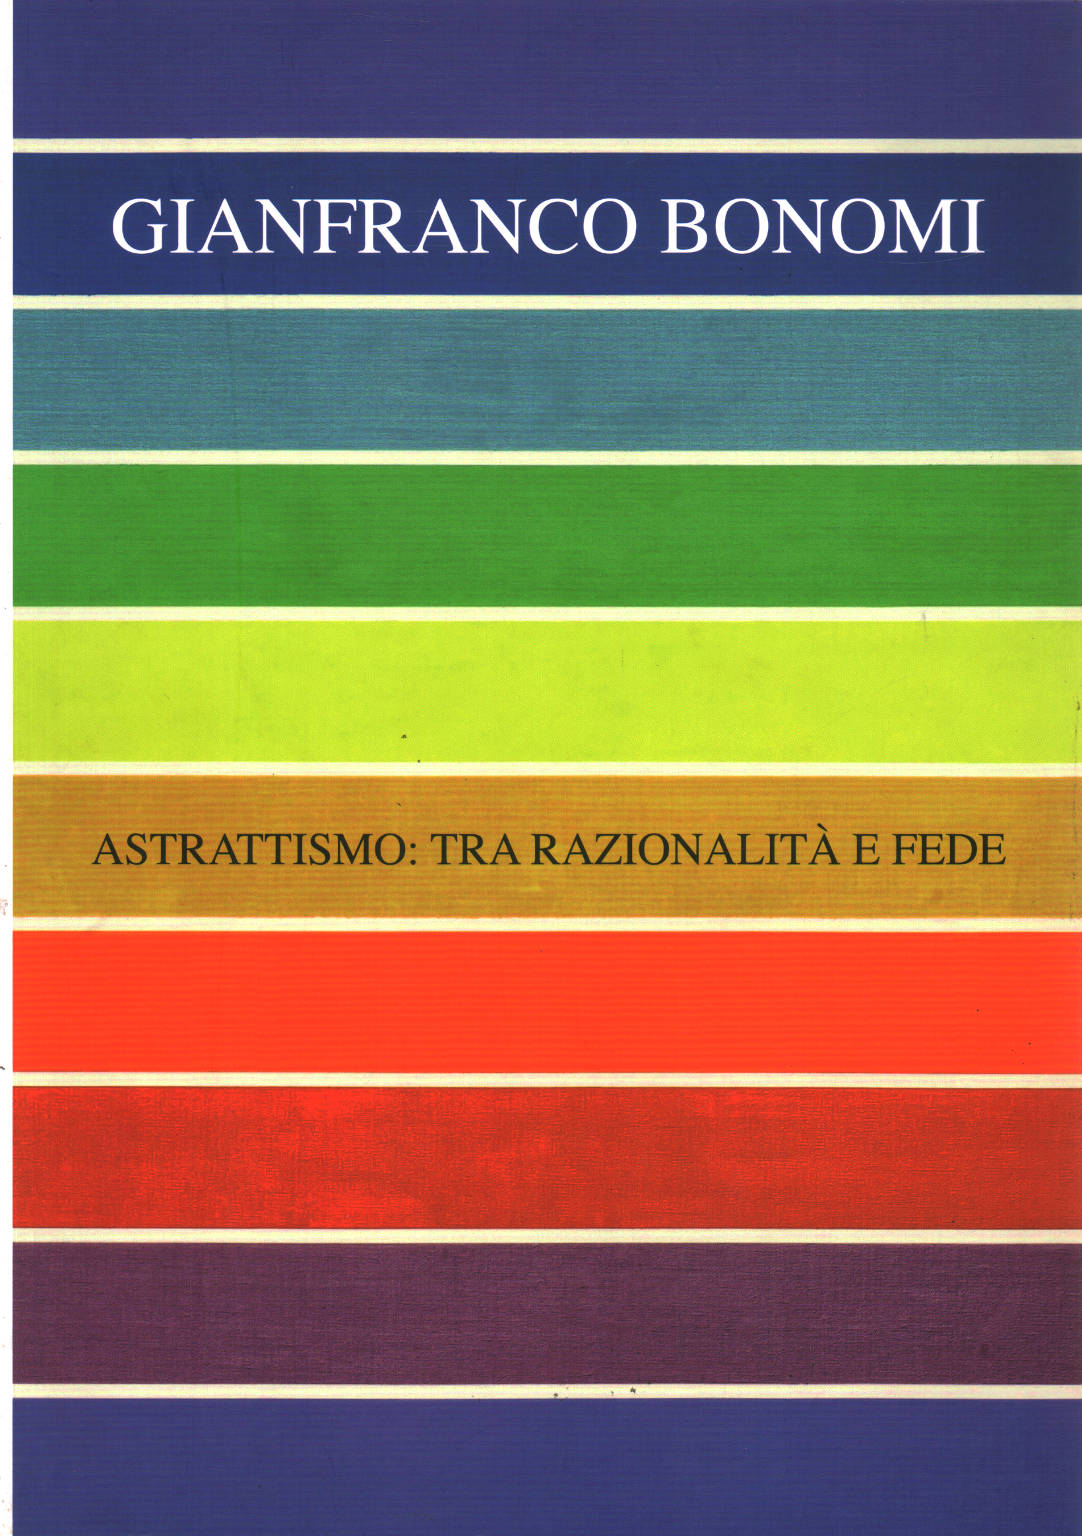 Gianfranco Bonomi. Astrattismo:tra razionalità e , Giuseppe Guarino